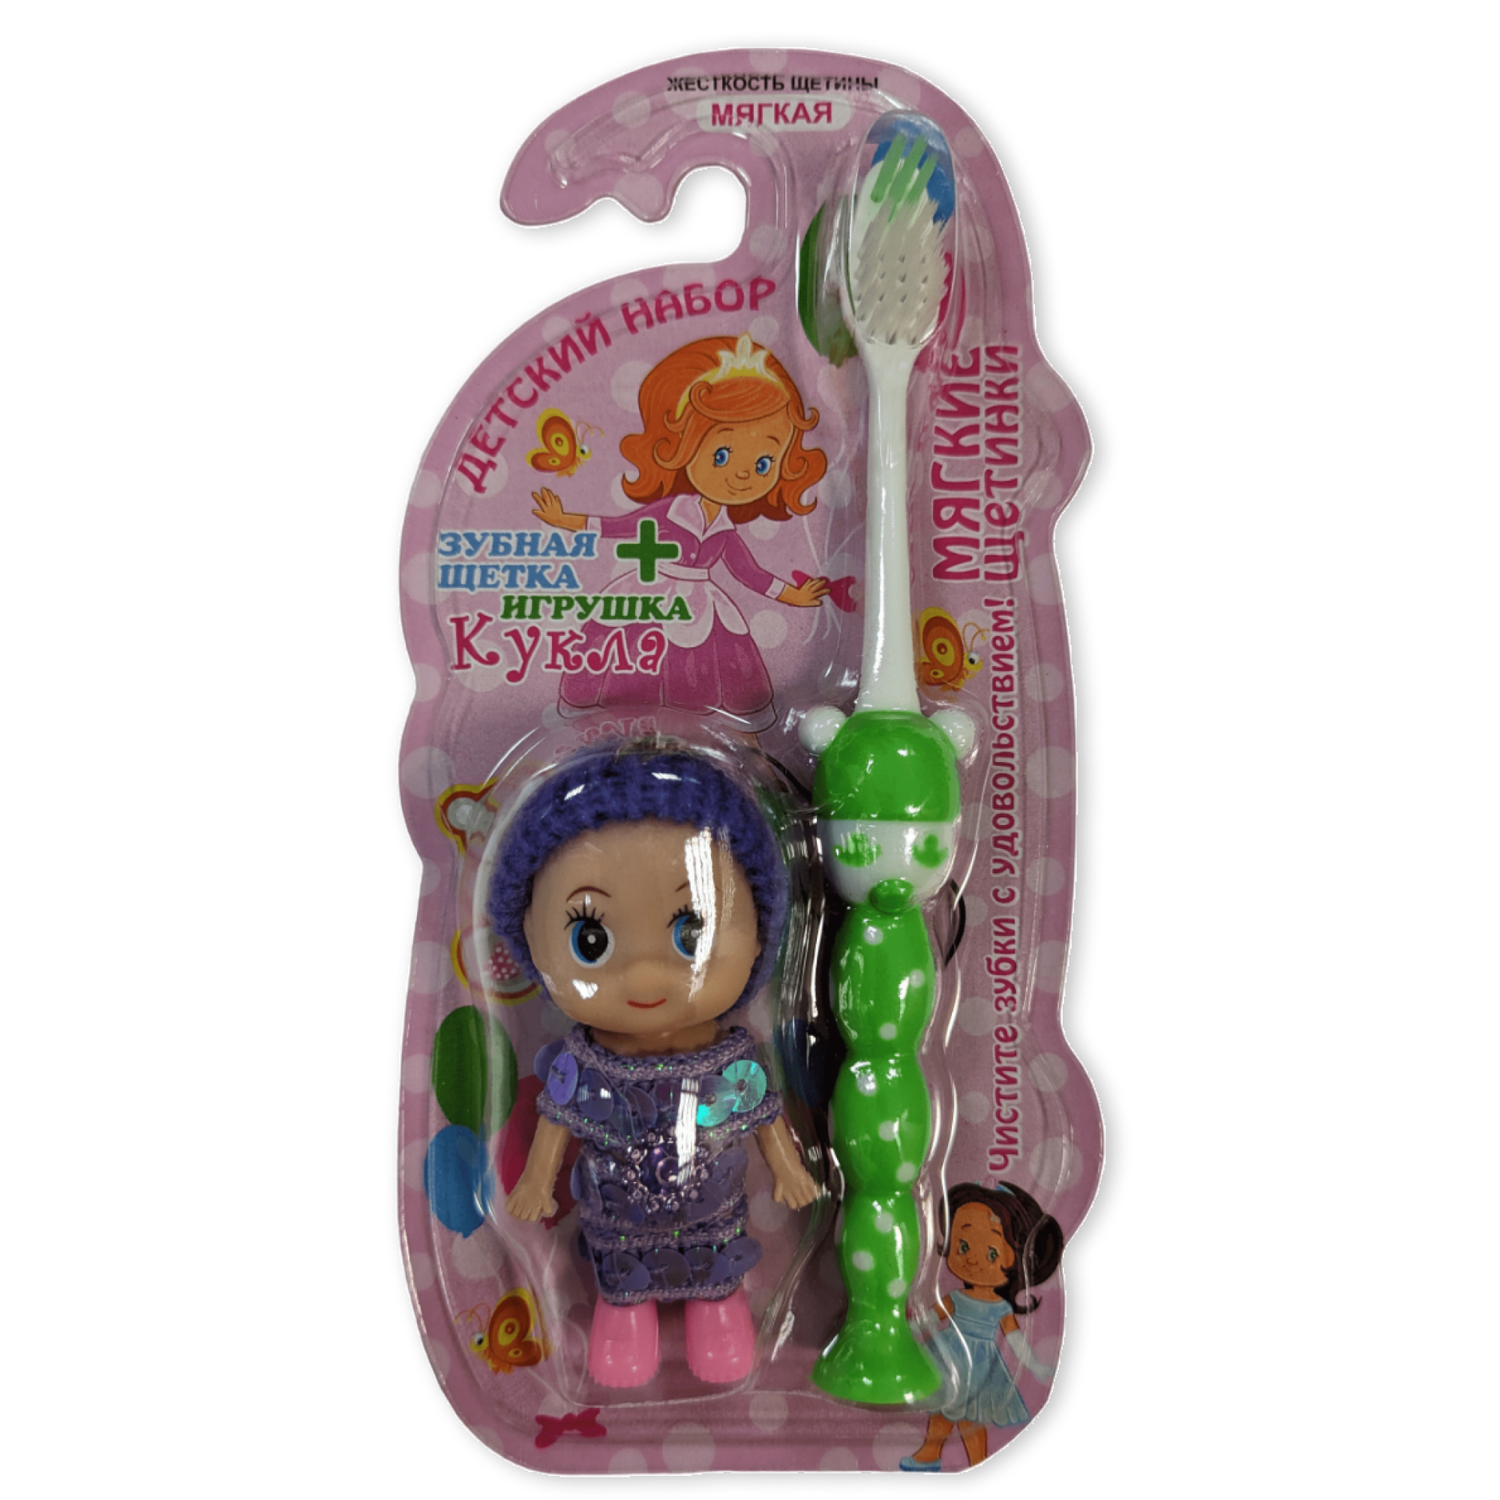 Зубная щетка детская Vilsen мягкая Девочка с присоской зеленая и игрушка Кукла - фото 1